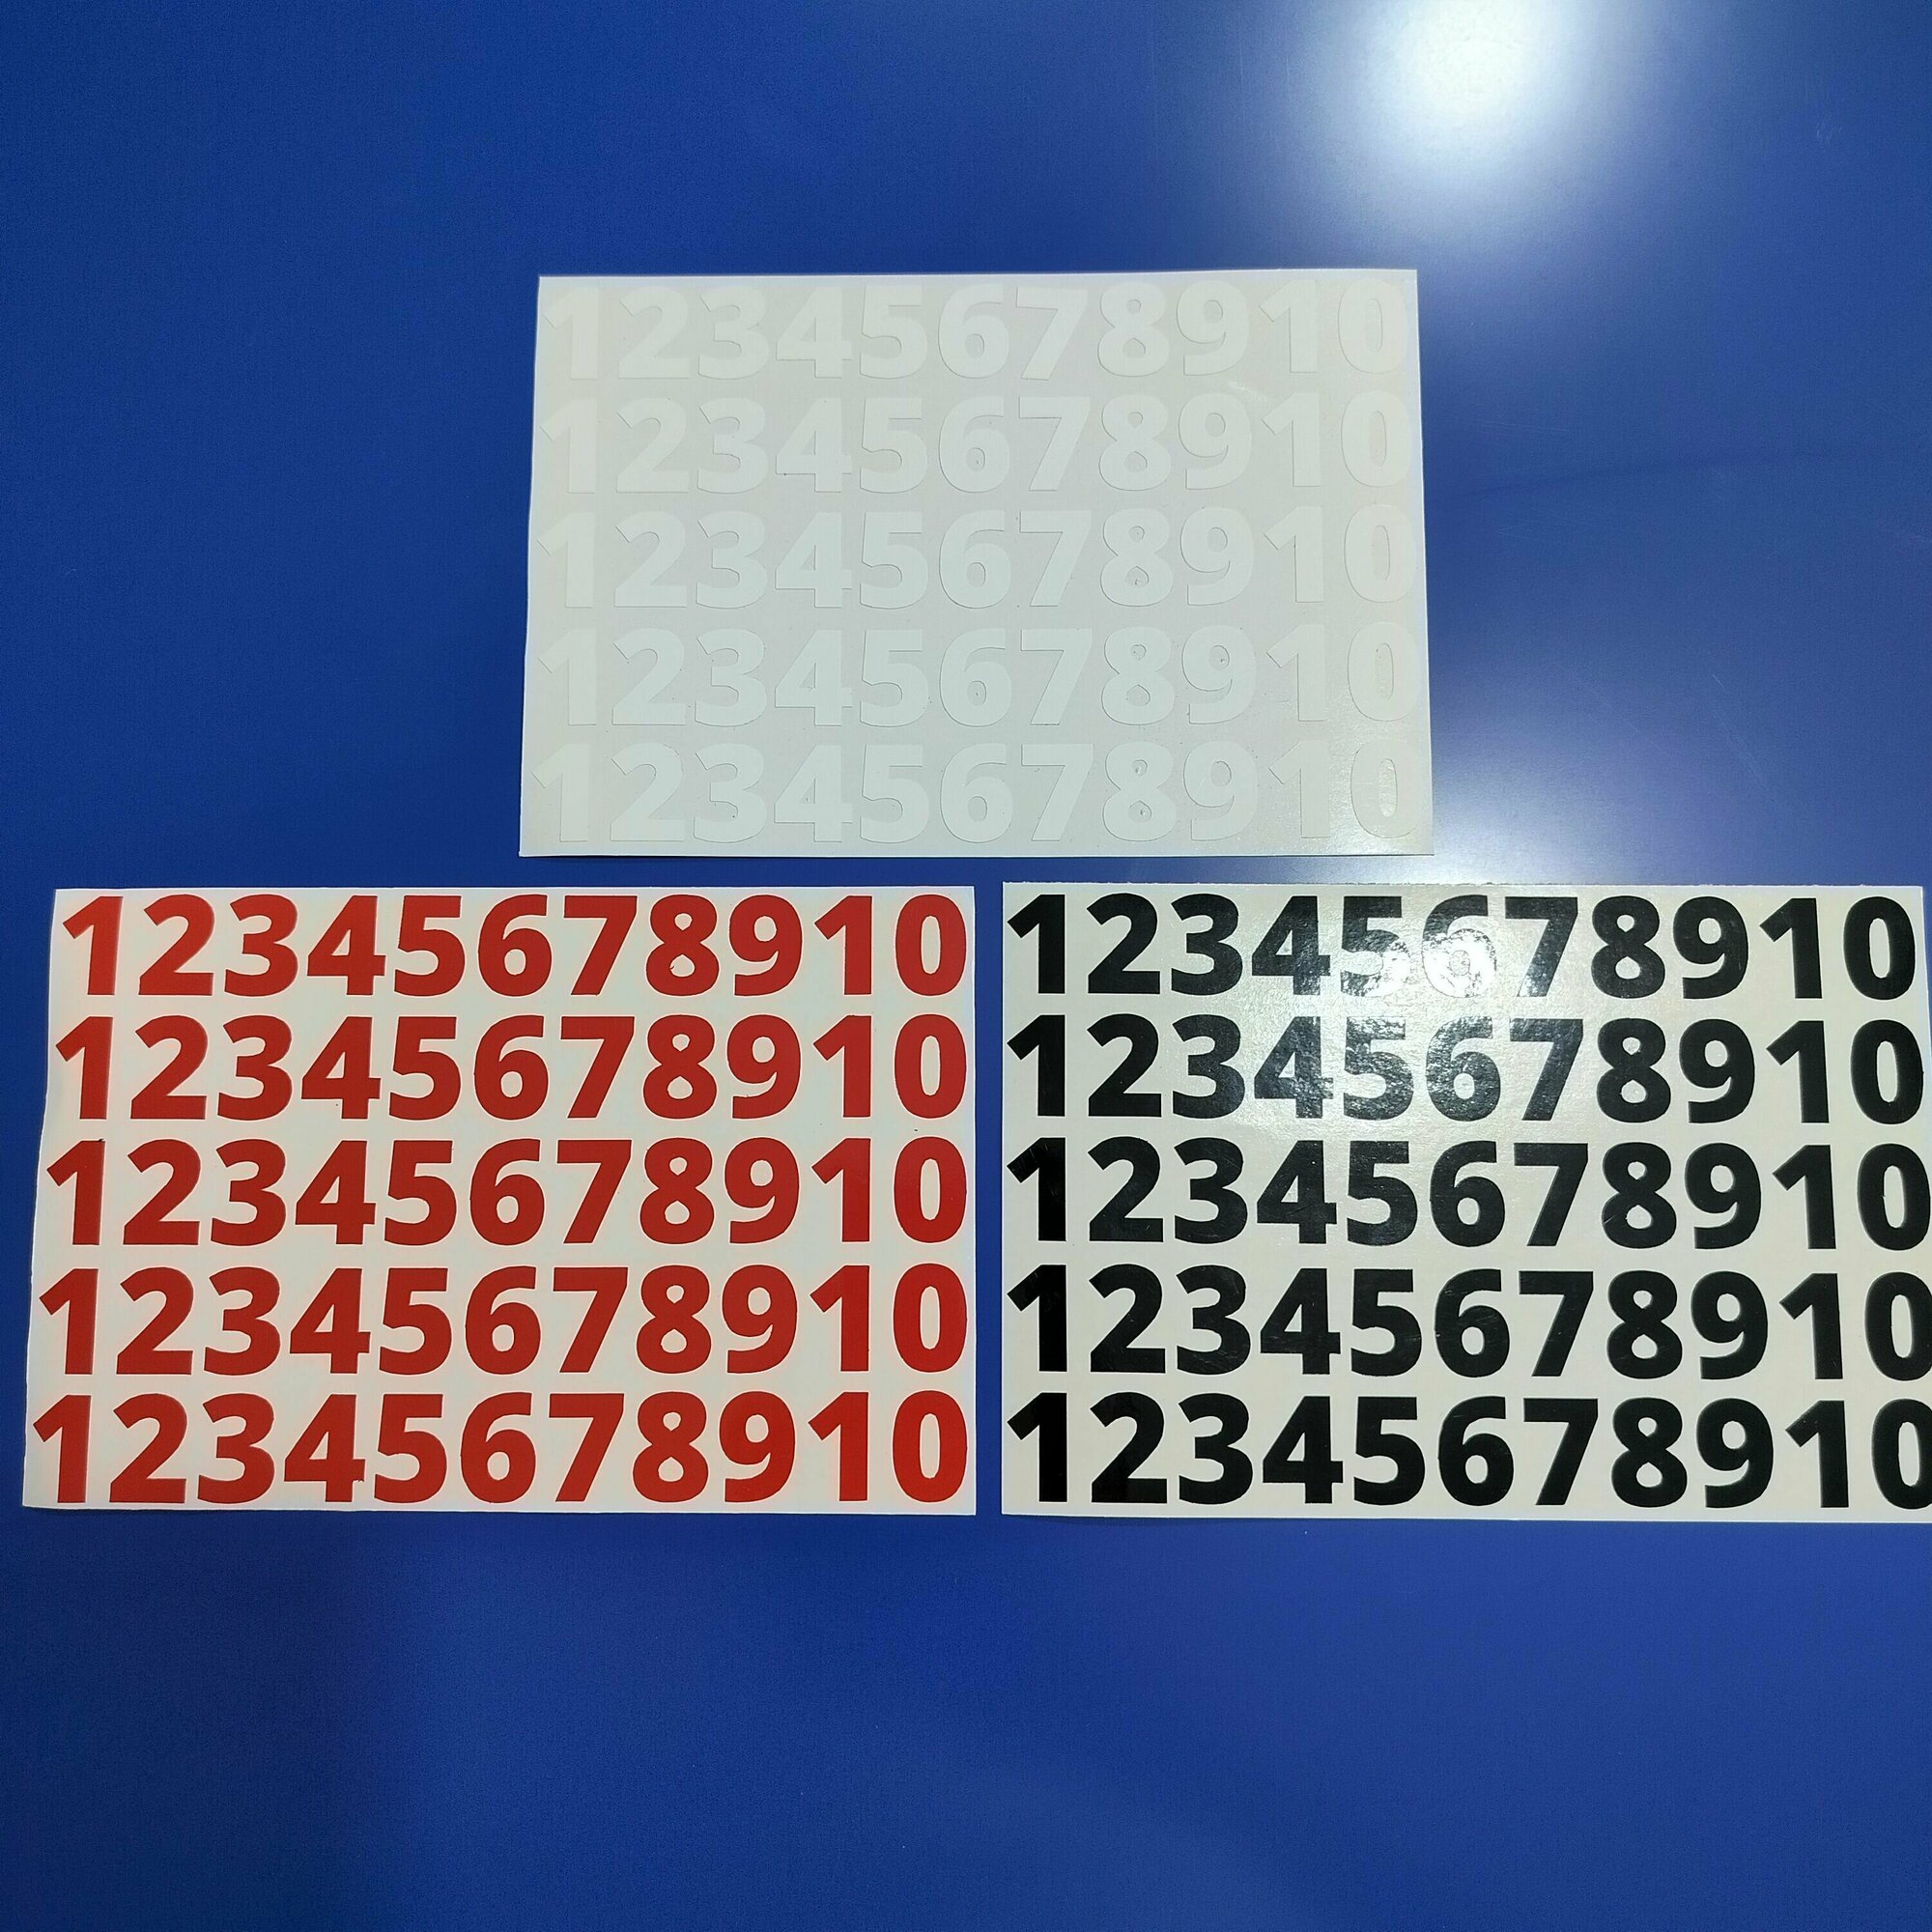 Наклейки цифры(стикеры) от 1 до 10, 3 цвета (белый, черный, красный), высота цифры 2 см